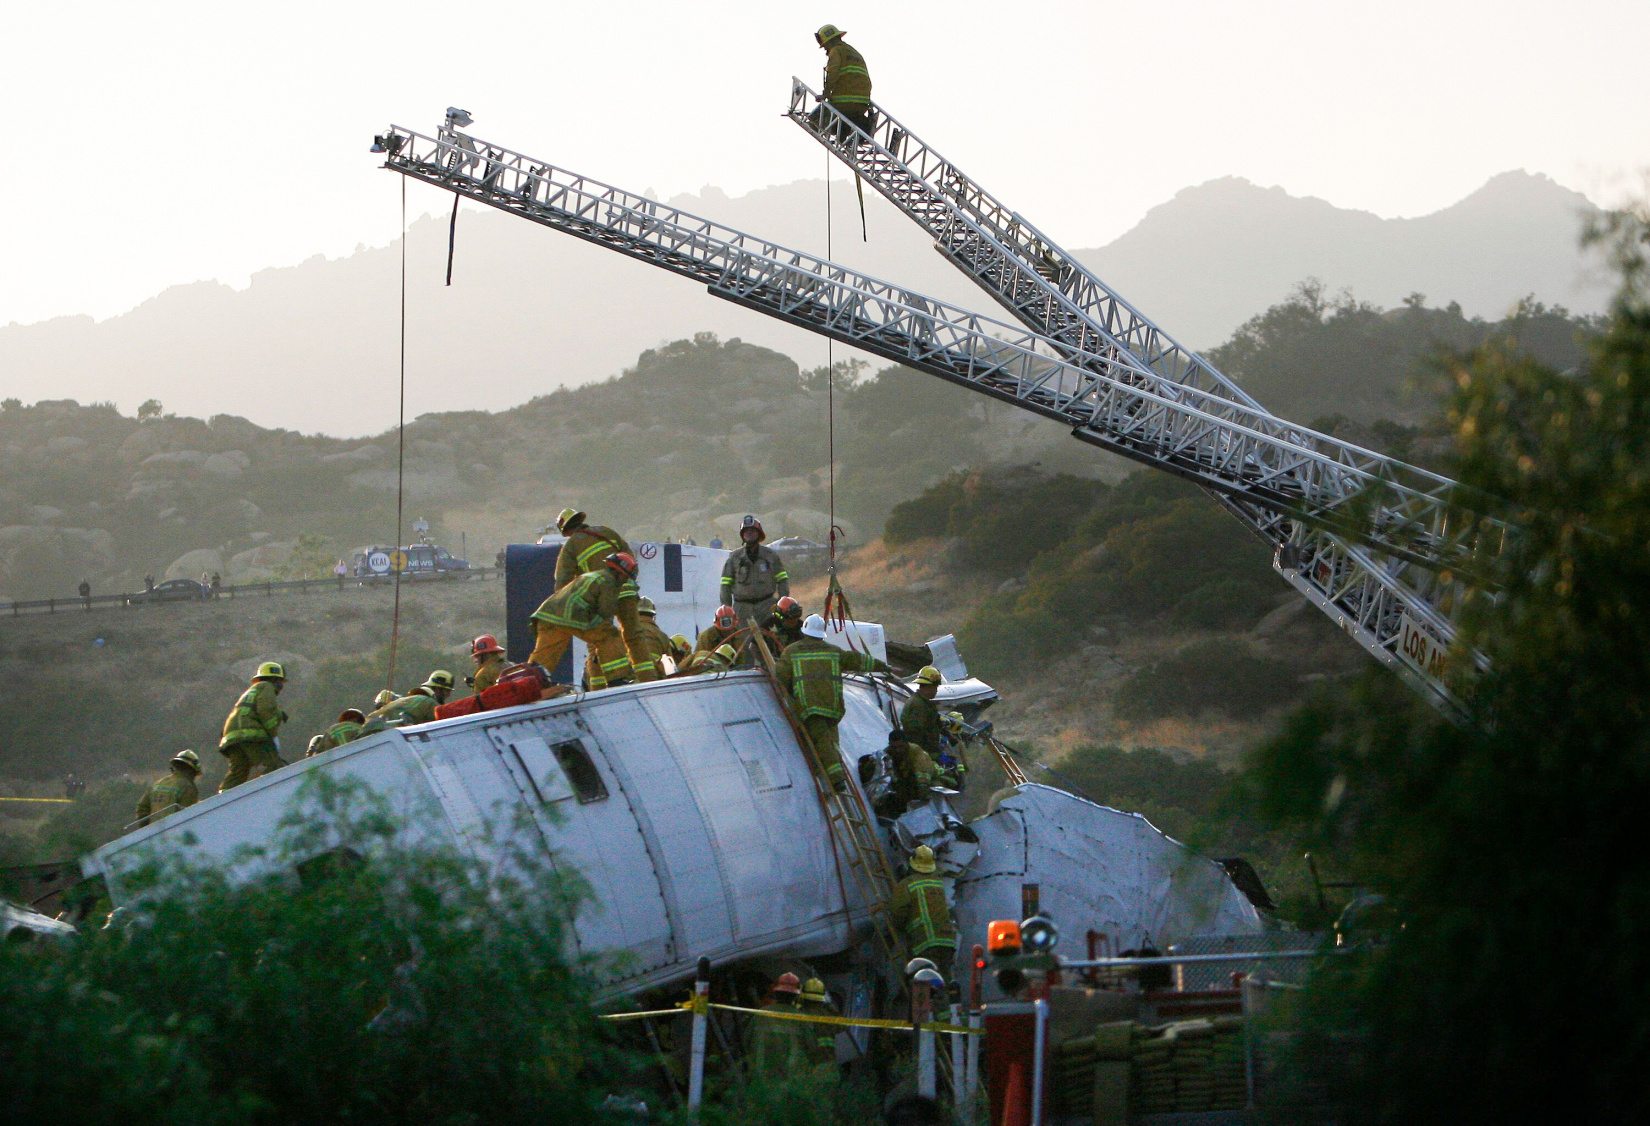 (LC: 20. juuli-22) Tuletõrjujad töötavad ohvri päästmiseks pärast seda, kui Metrolinki linnalähirong, mis oli teel Los Angelese Unioni jaamast Oxnardi, põrkas 12. septembril 2008 Chatsworthi piirkonnas kokku kaubarongiga. Üle 300 tuletõrjuja töötab leekide summutamise nimel. ja päästa ohvreid, teatas Los Angelese tuletõrje. Pildi krediit: Alamy | REUTERS/Gus Ruelas (ÜHENDRIIGID) | ID: 2D1M052